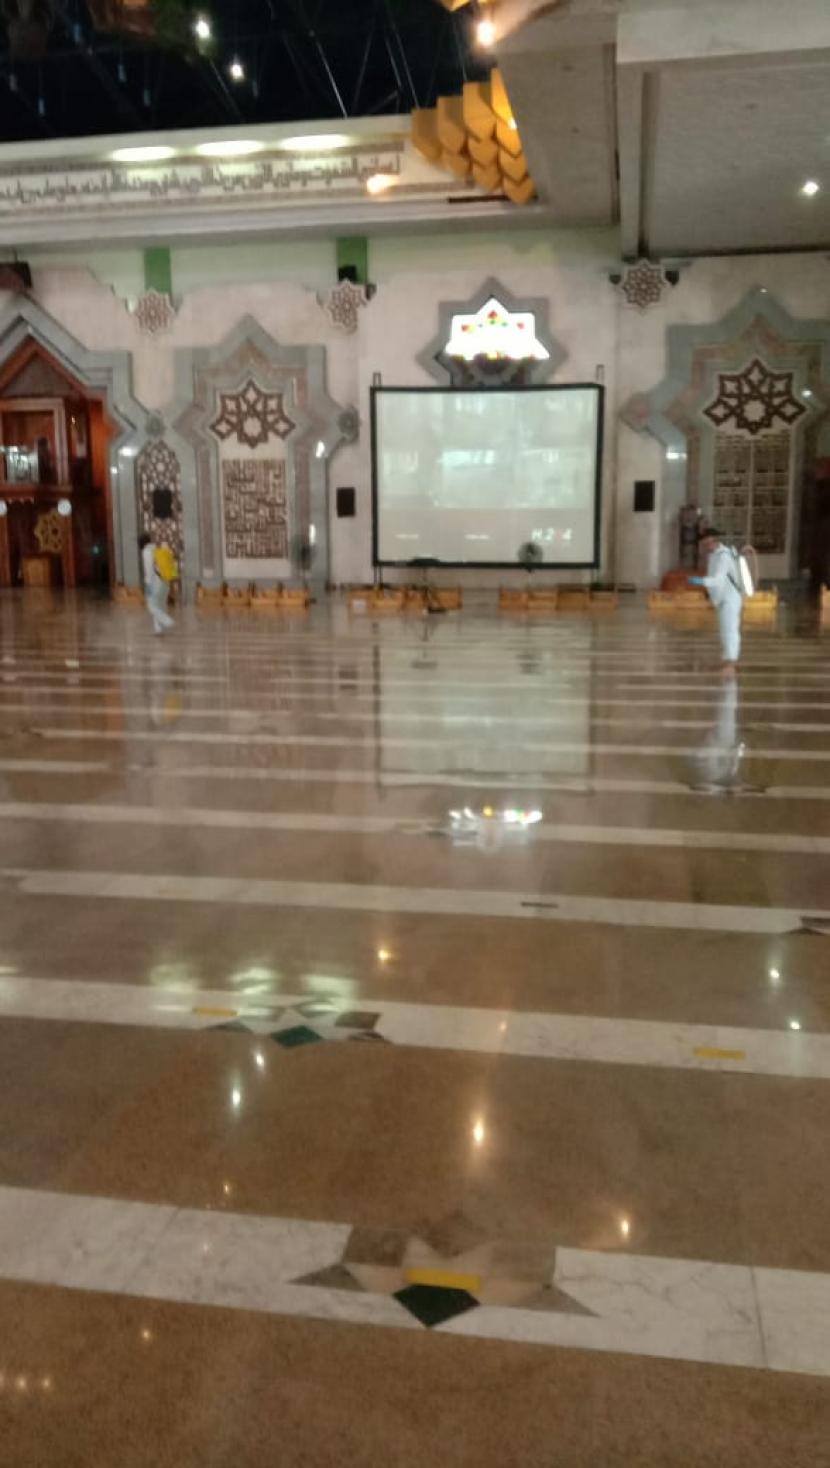 Pengelola membersihkan area masjid dengan cairan disinfektan. 